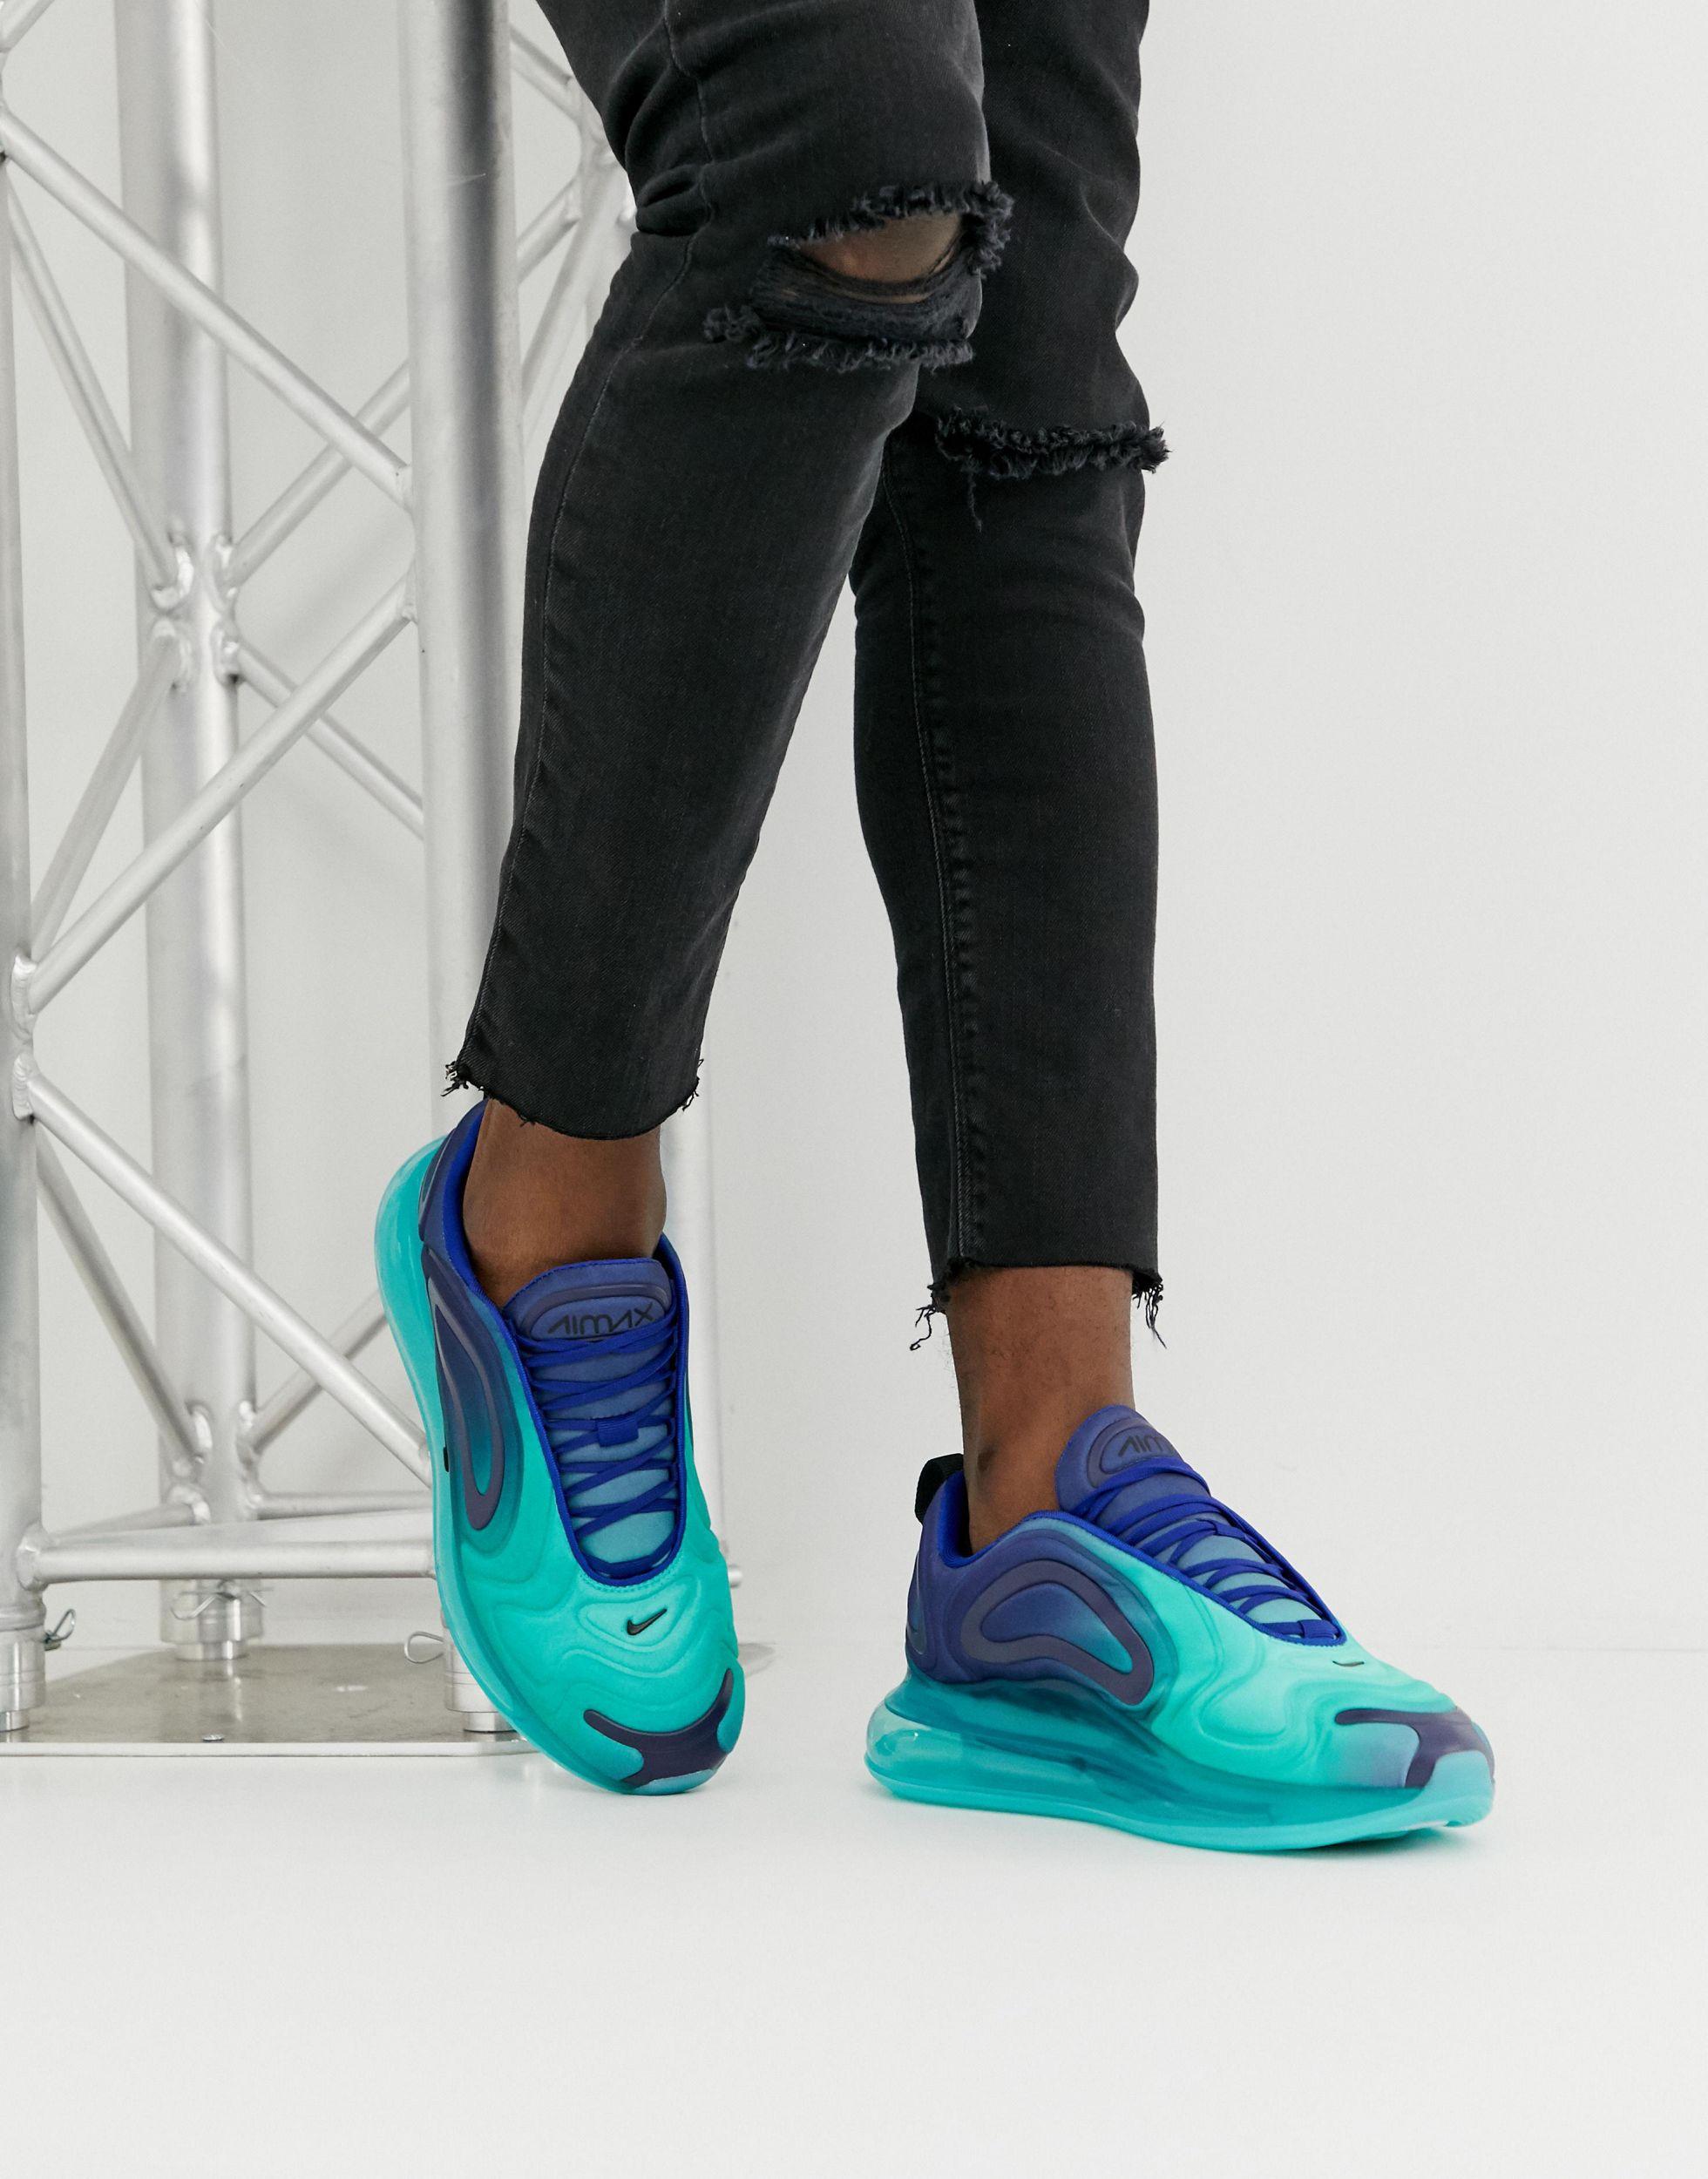 Men's Nike Air Max 720